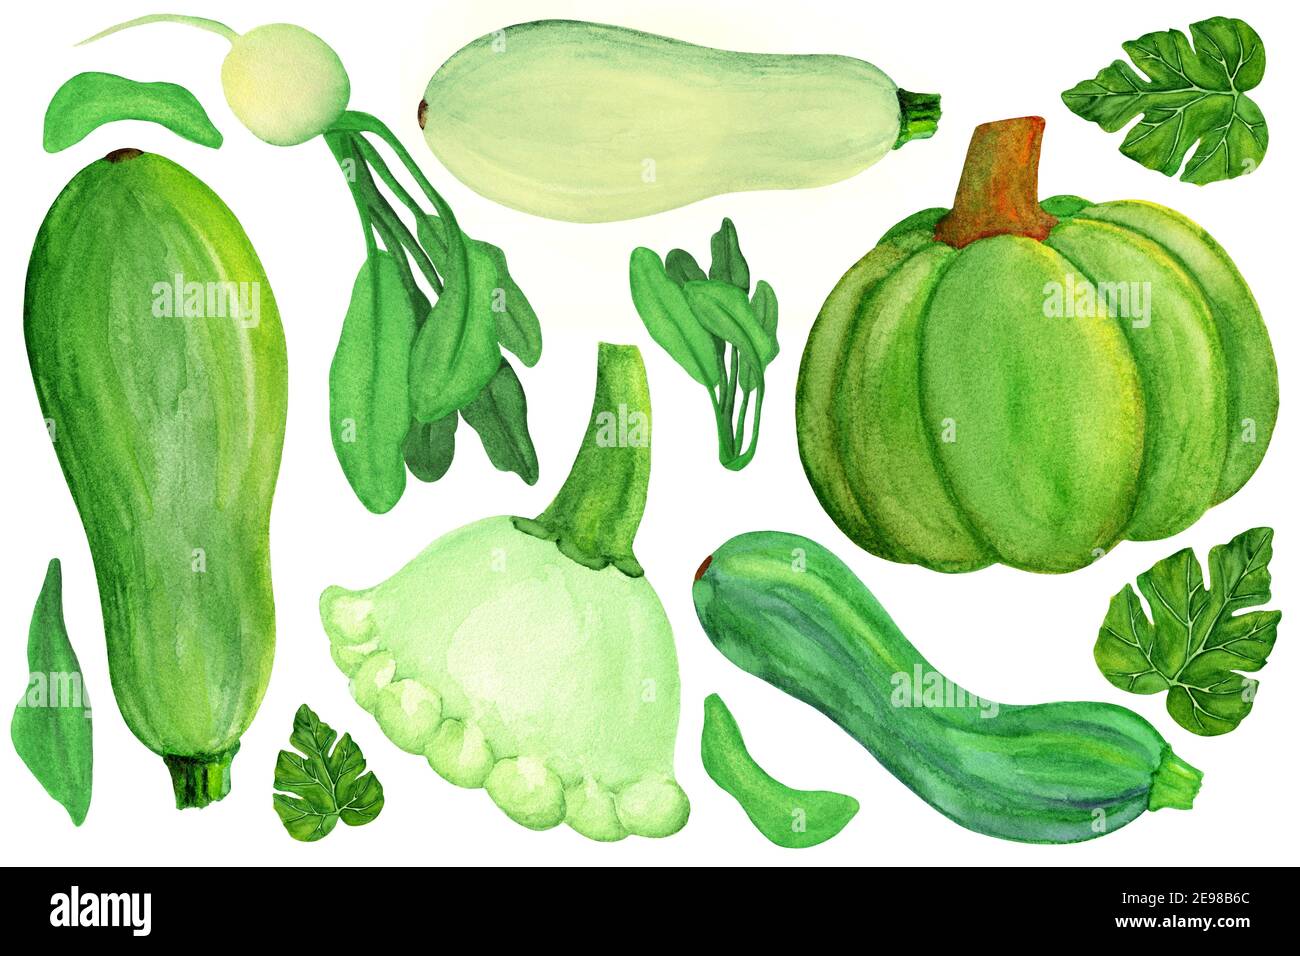 Green squashes and radish on white isolated background Stock Photo